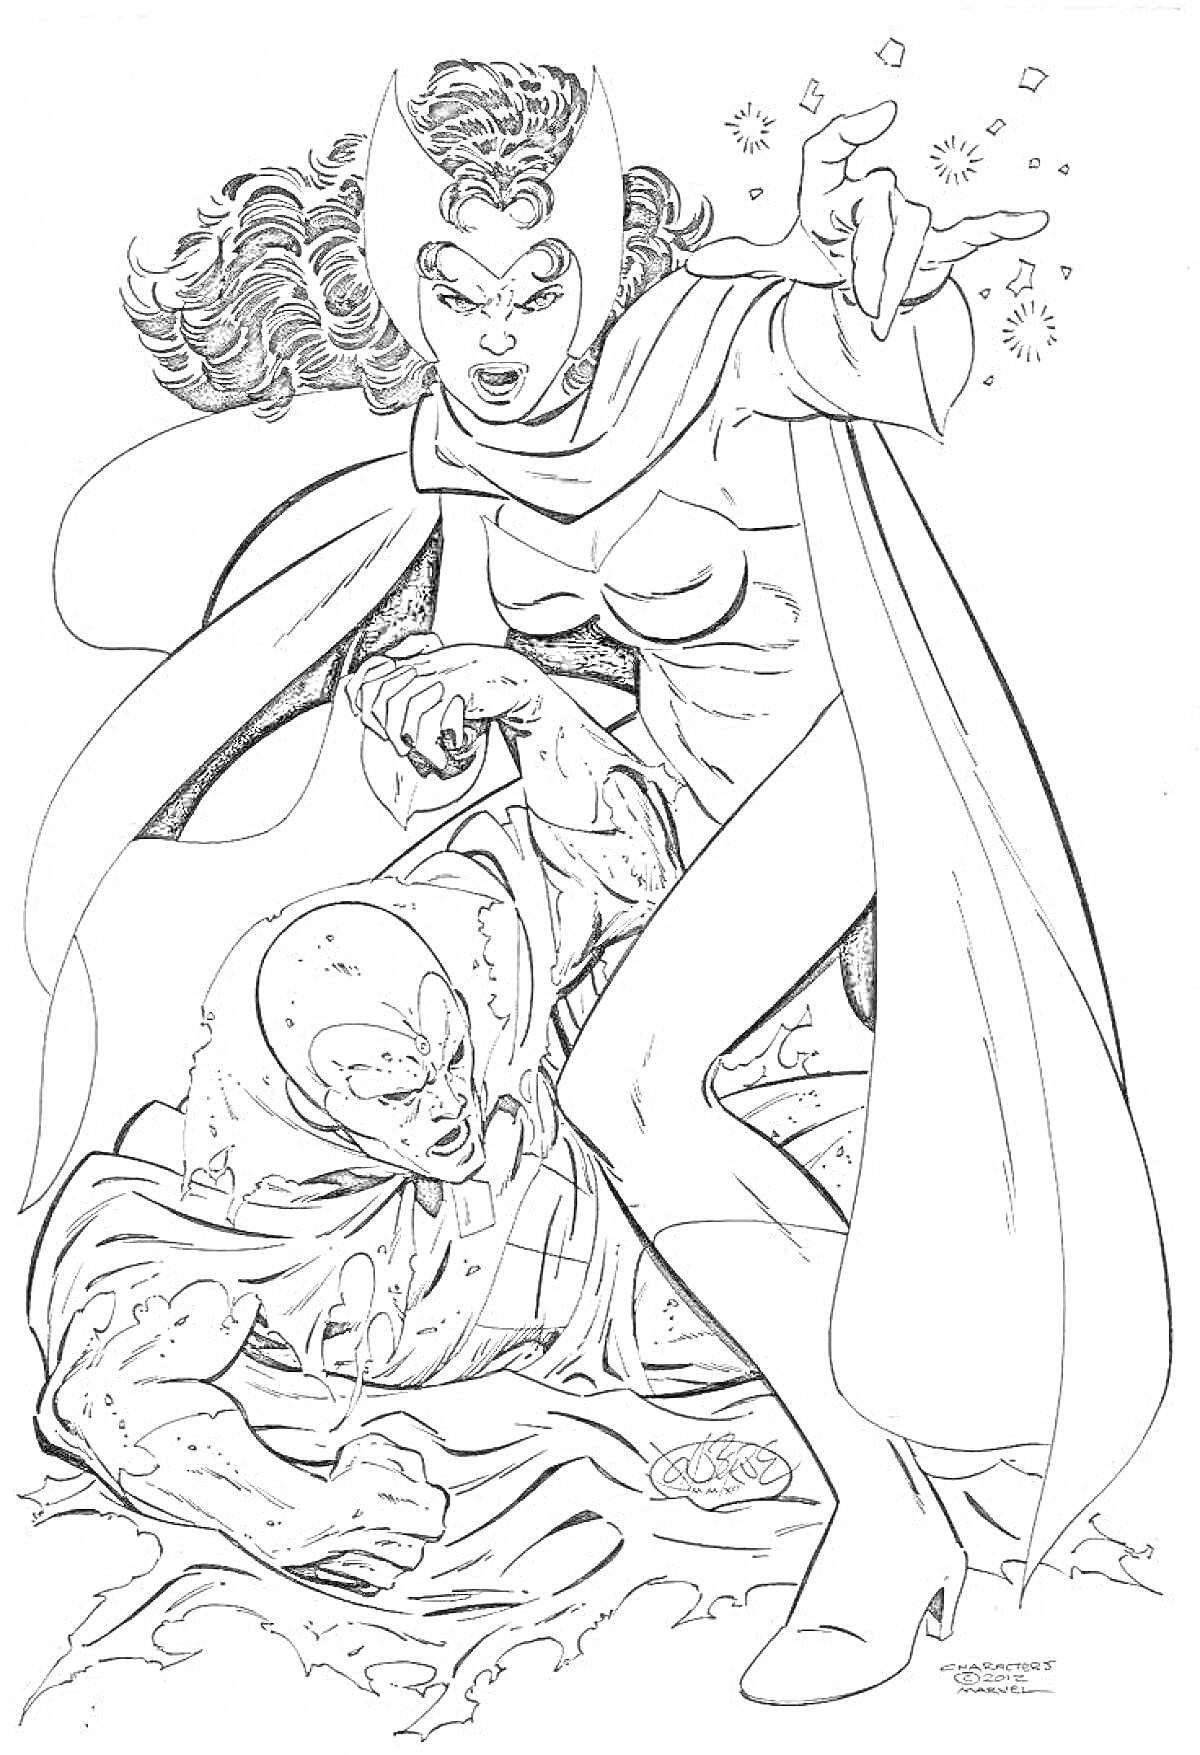 Раскраска Алая ведьма в накидке использует магию, рядом с ней лежащий персонаж